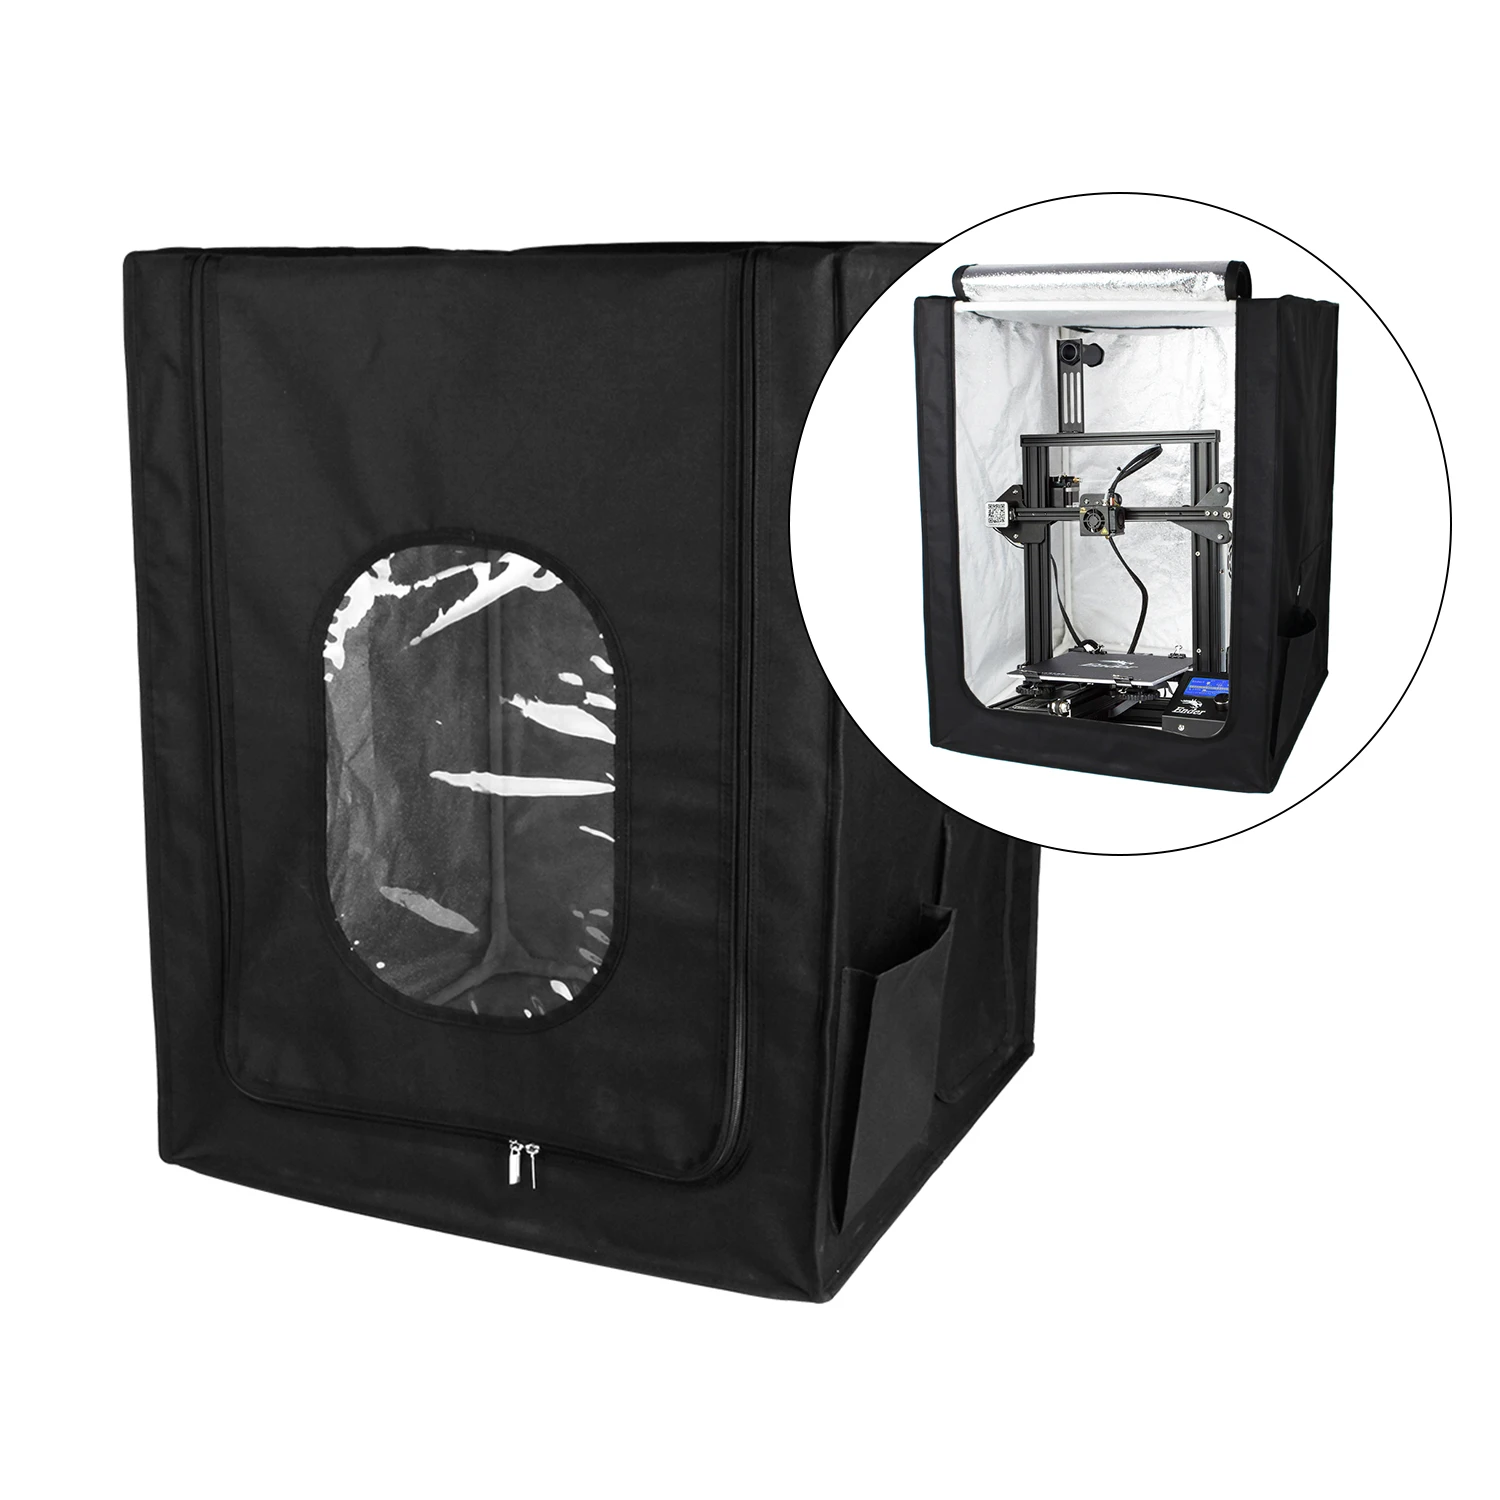 Protección de la Cubierta de la Carcasa Incombustible y a prueba de Polvo Tienda Retardante de Llama de la Impresora 3D Para Ender-3/Ender-3 Pro/Ender-5 de la Impresora 3D 4